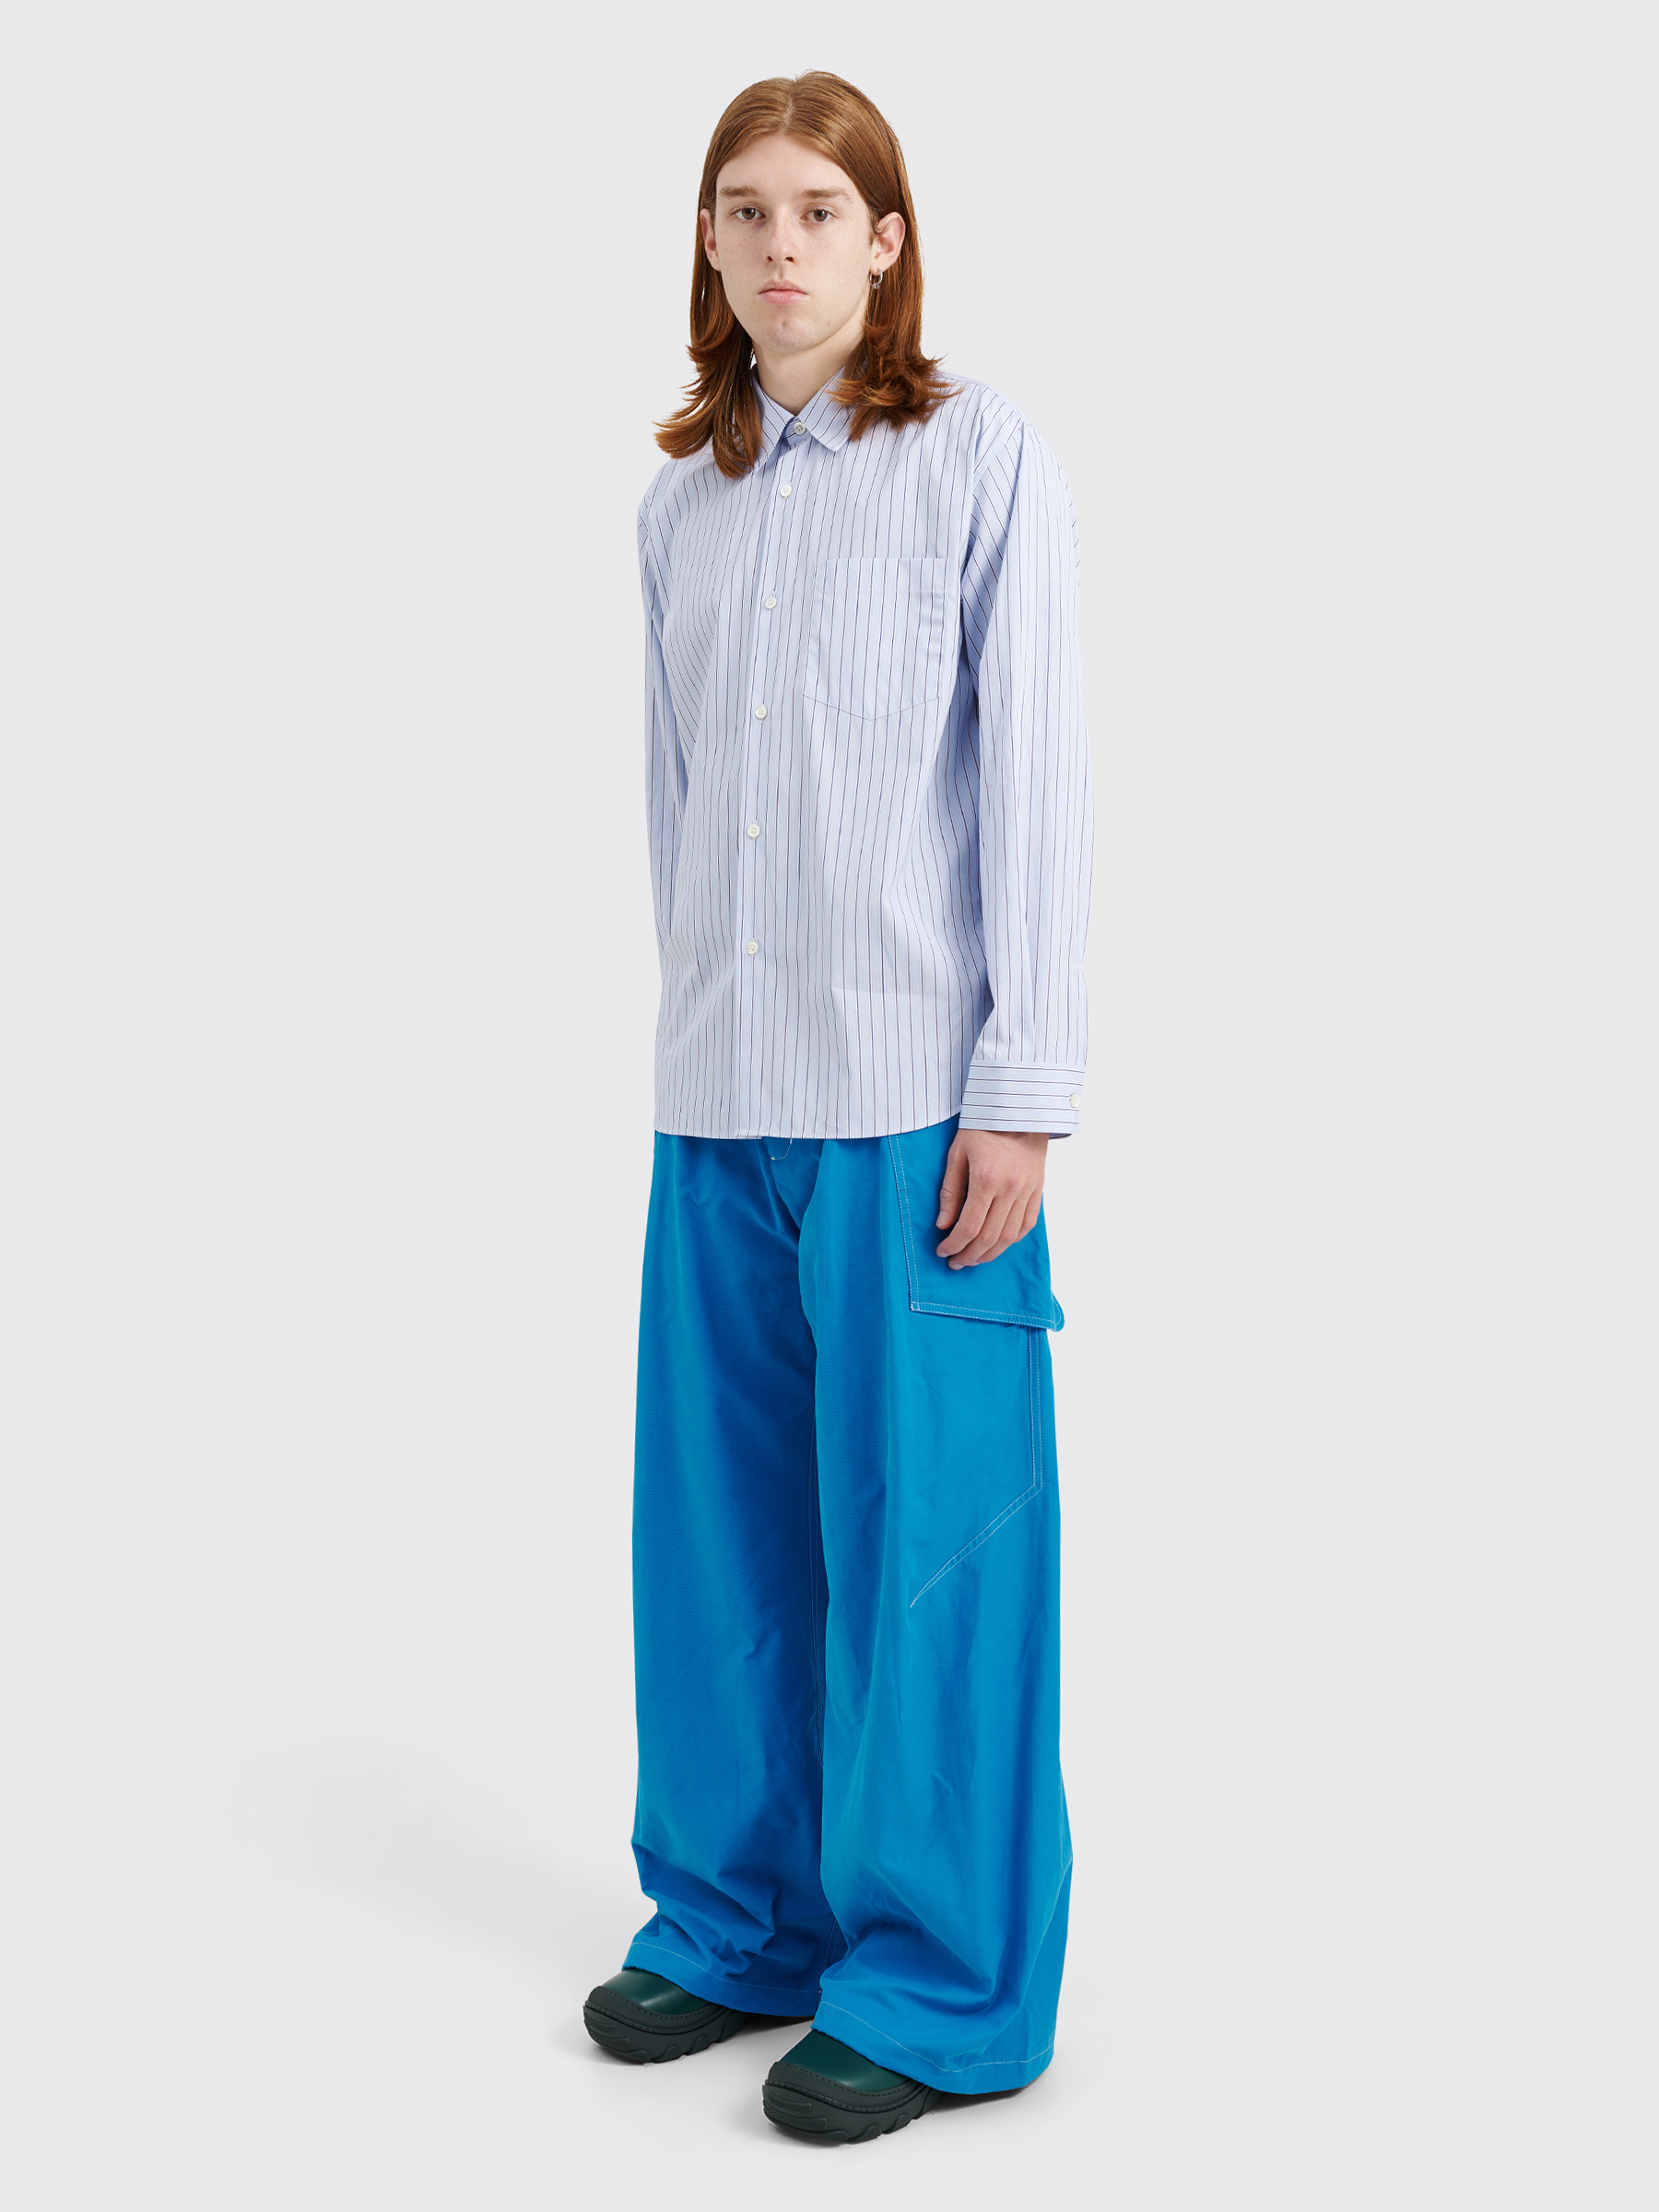 Très Bien - Kiko Kostadinov Meno Trousers Brushed Twill Cerulean Blue